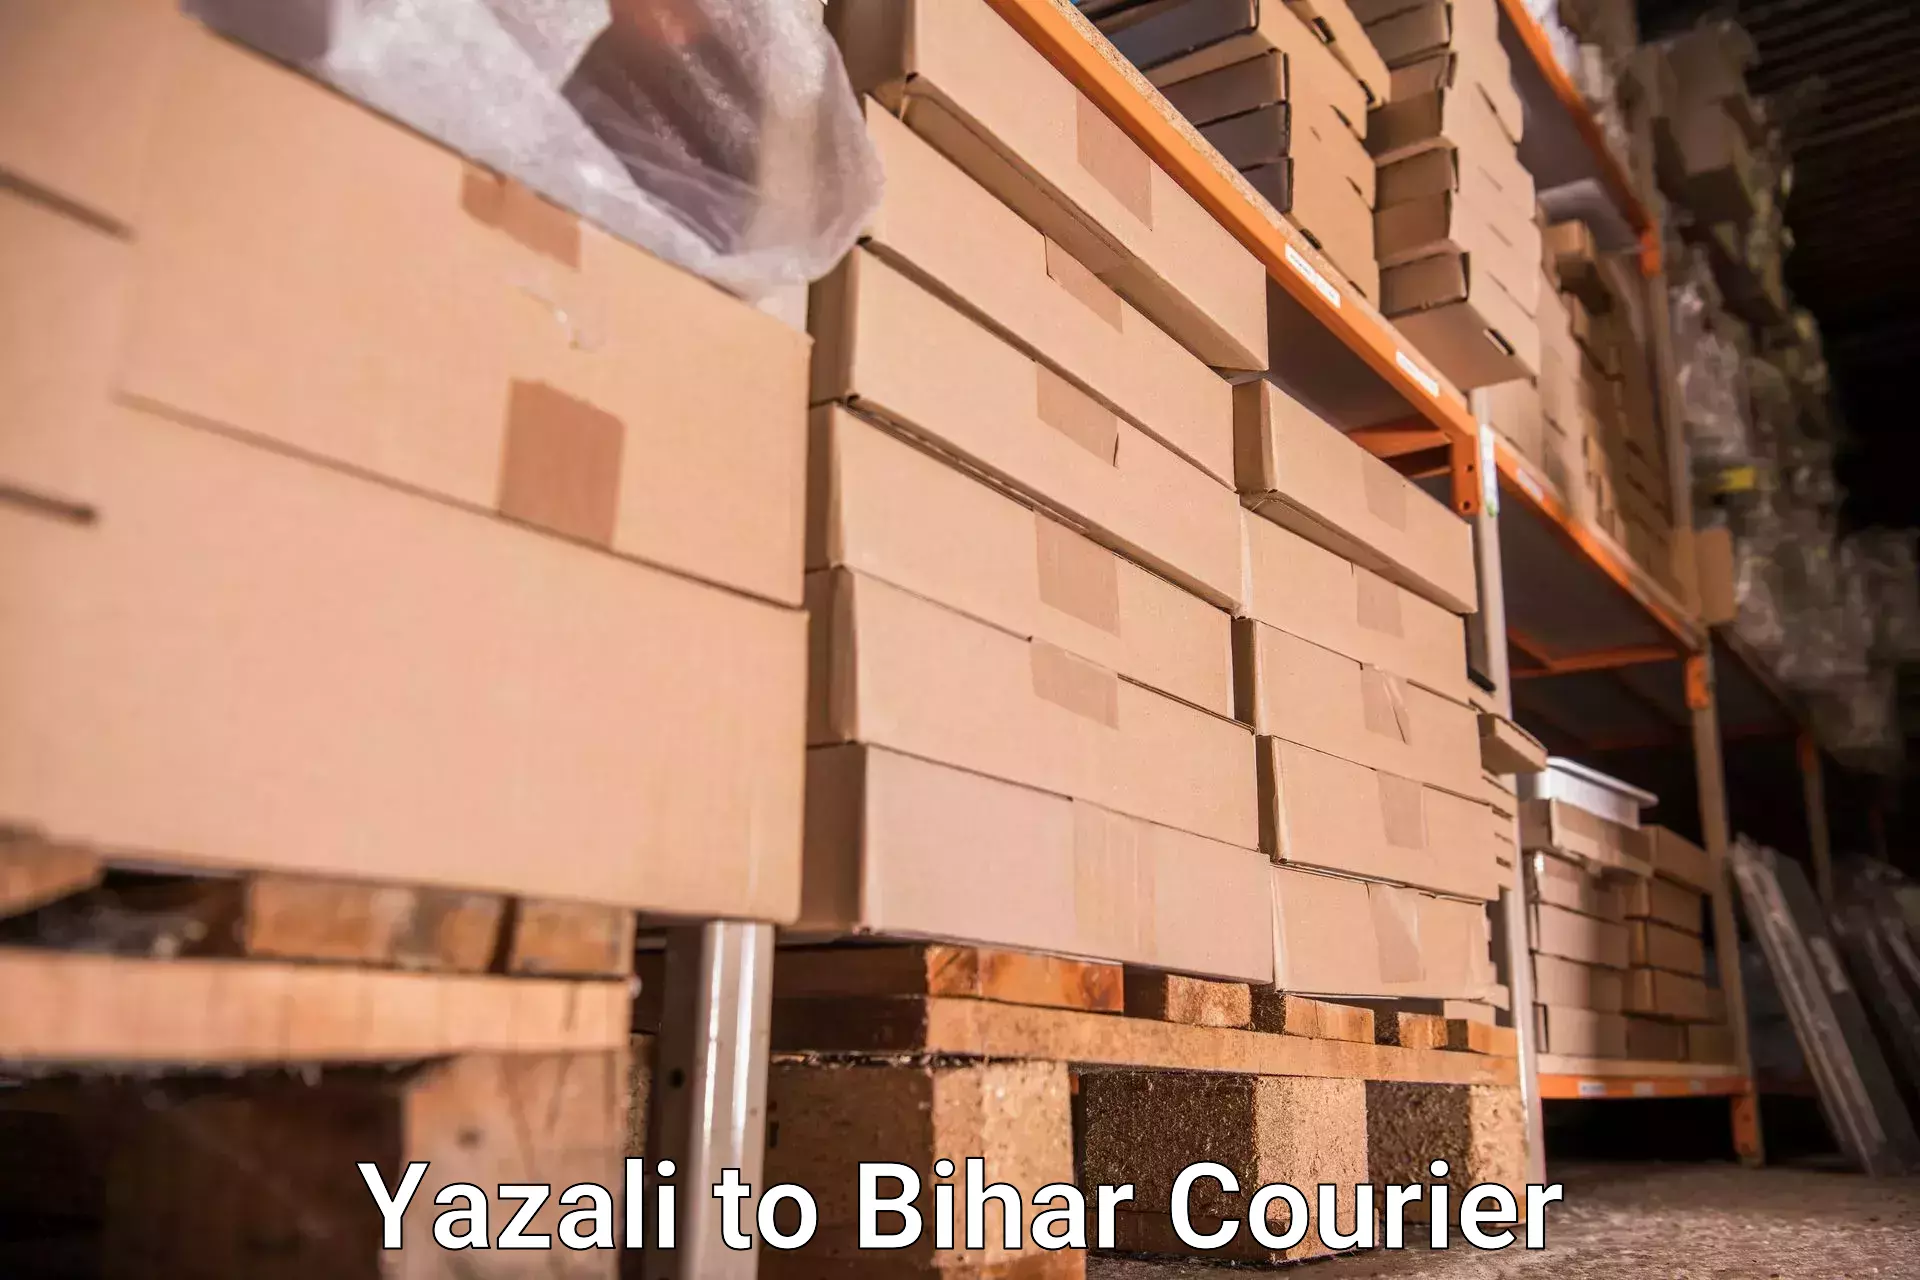 Luggage transport guidelines Yazali to Biraul